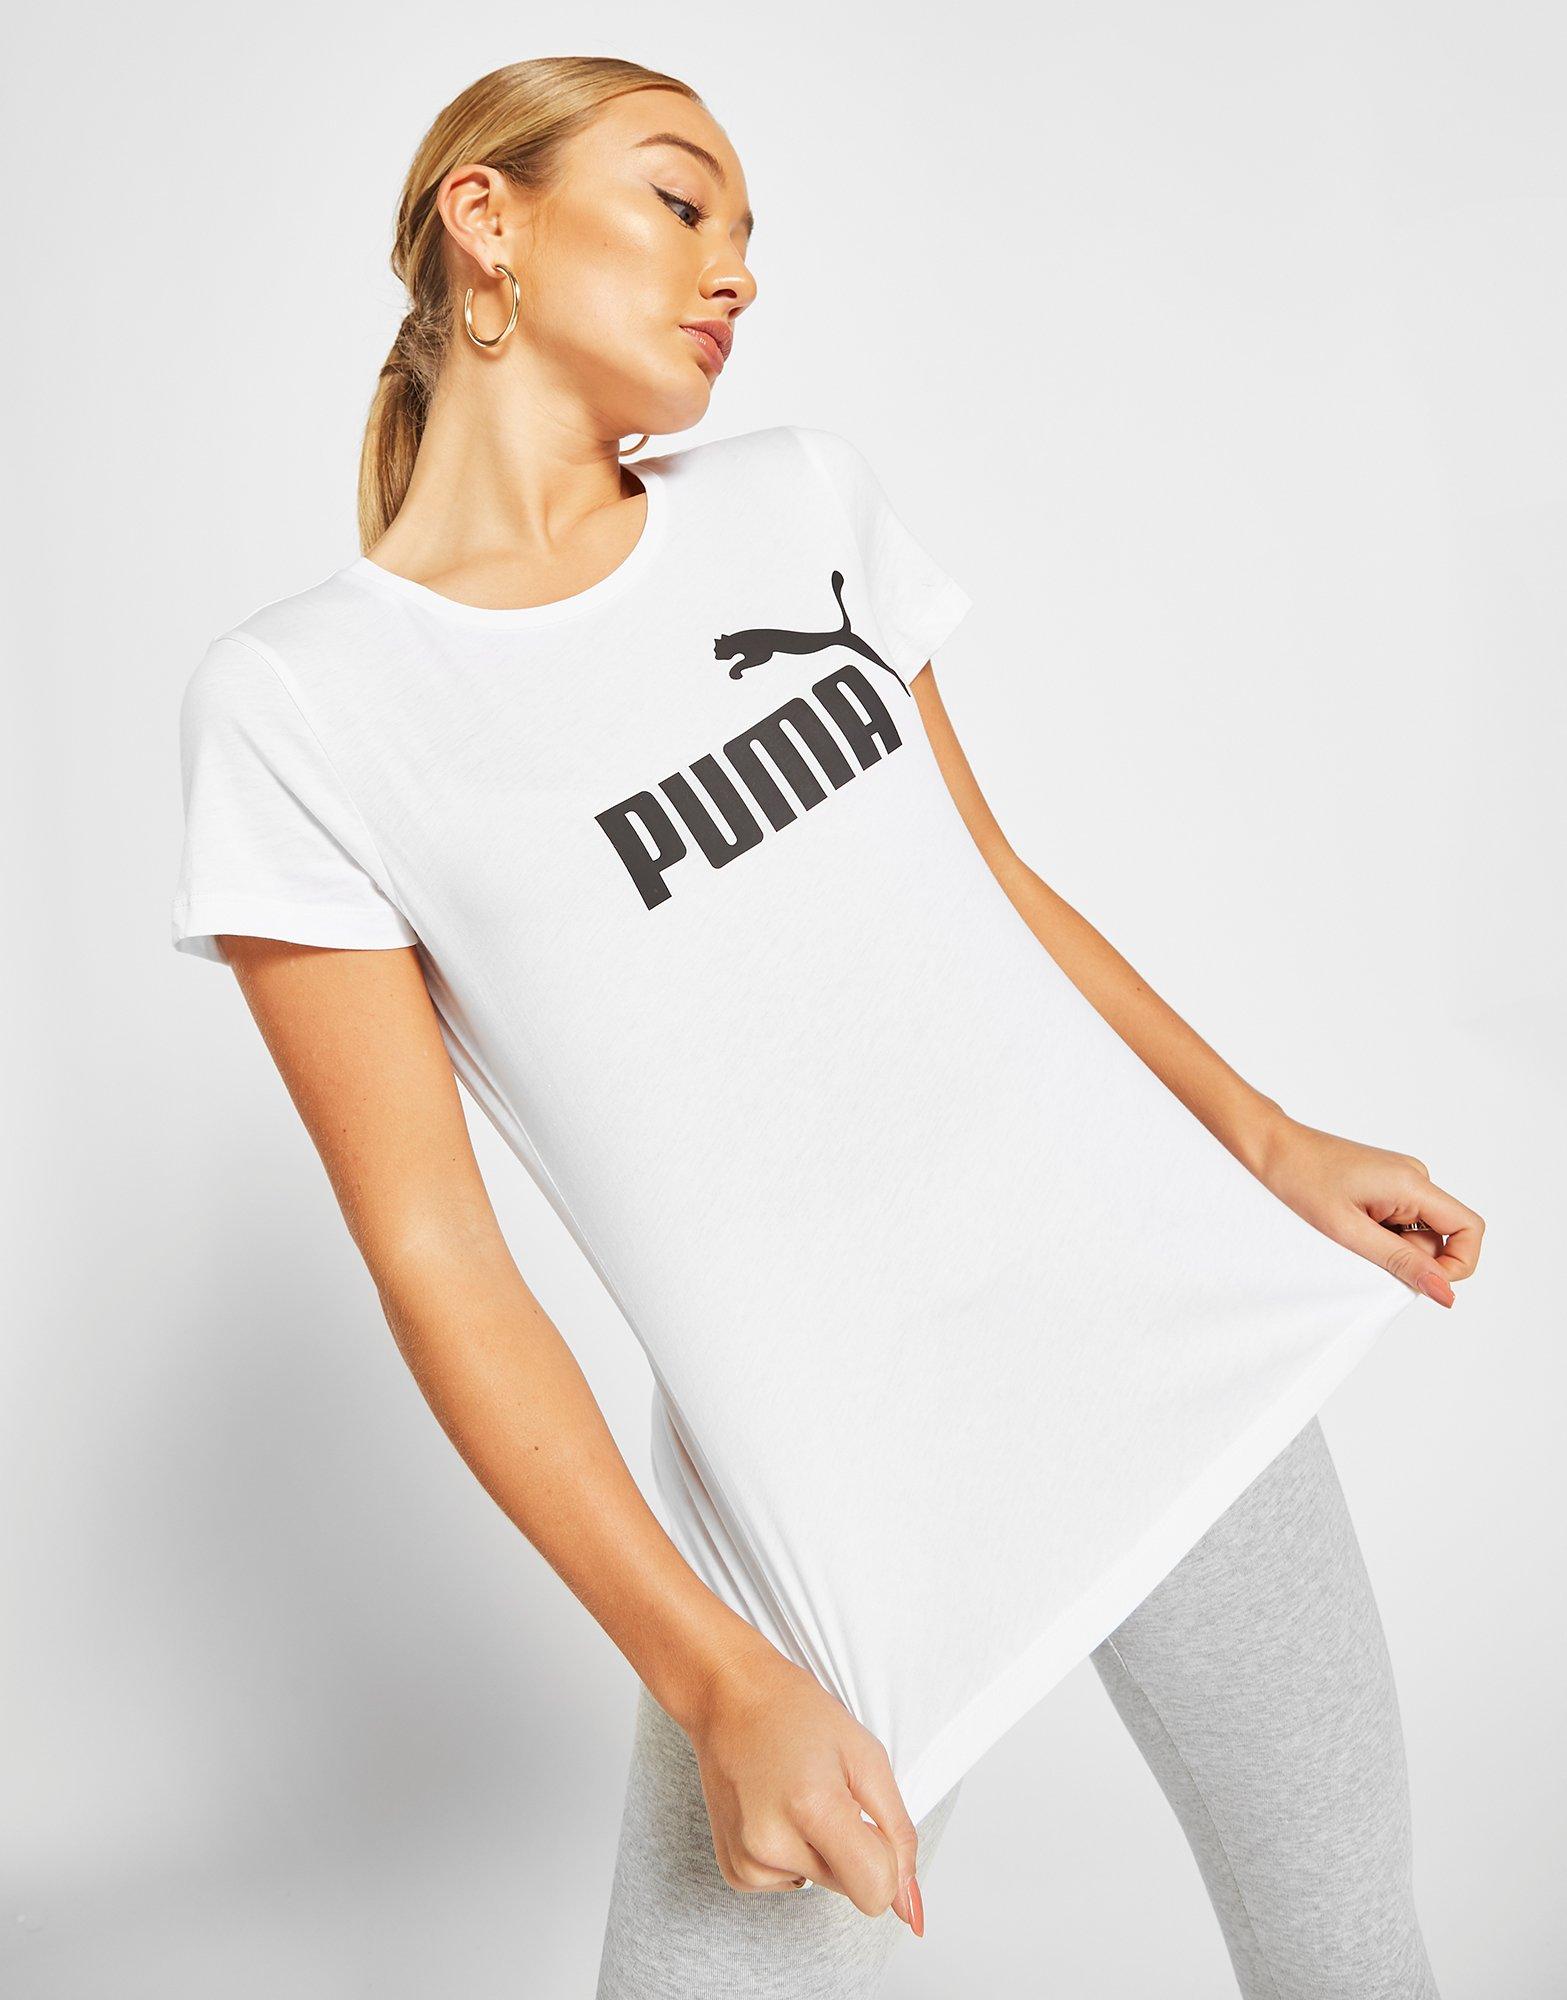 New Puma Womenâs Core T-Shirt White | eBay